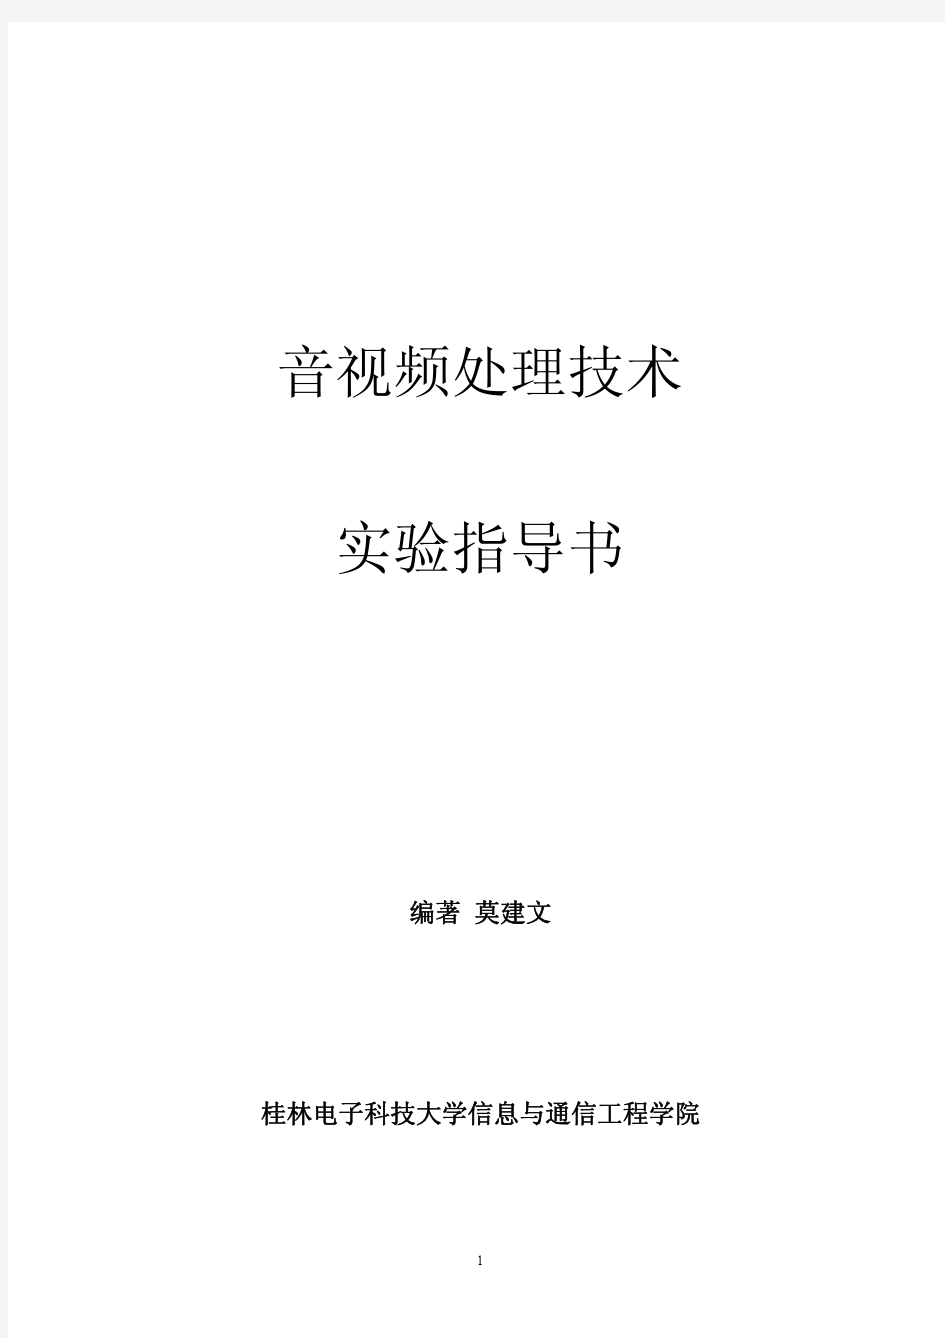 桂林电子科技大学音视频处理技术-实验指导书